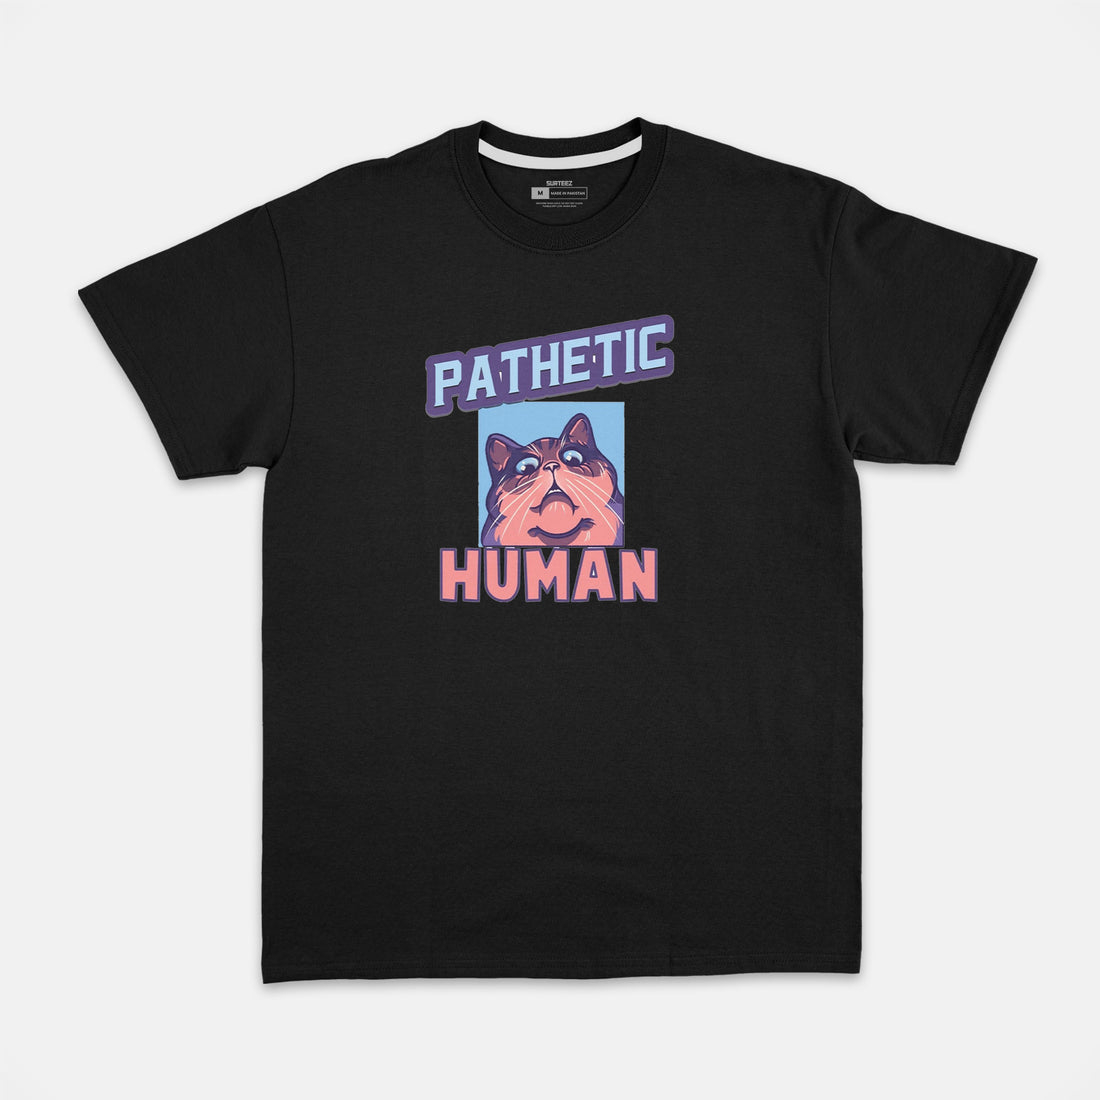 Pathetic Human Graphic Tee